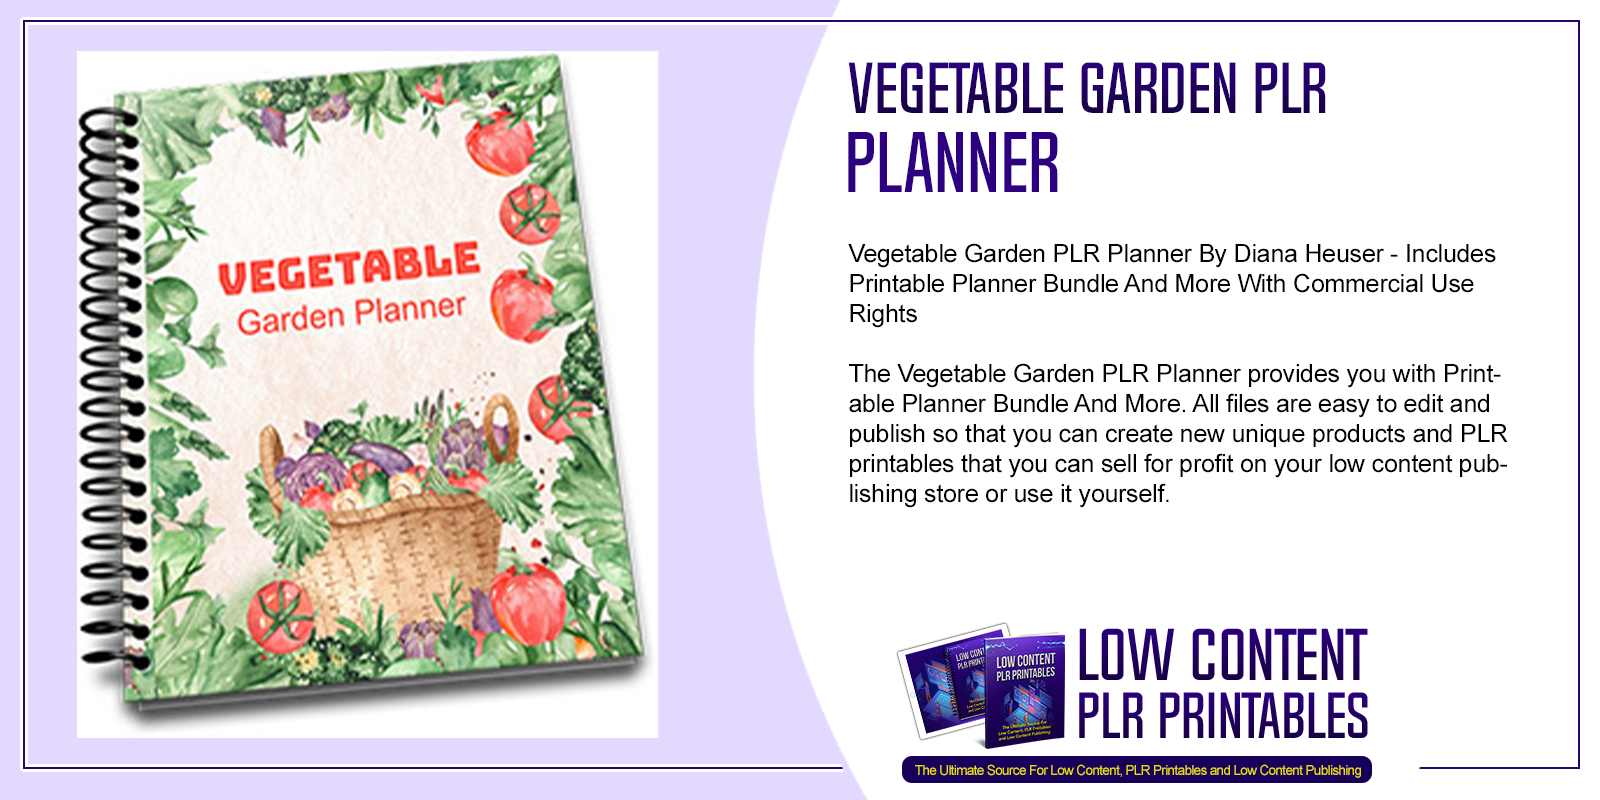 Vegetable Garden PLR Planner